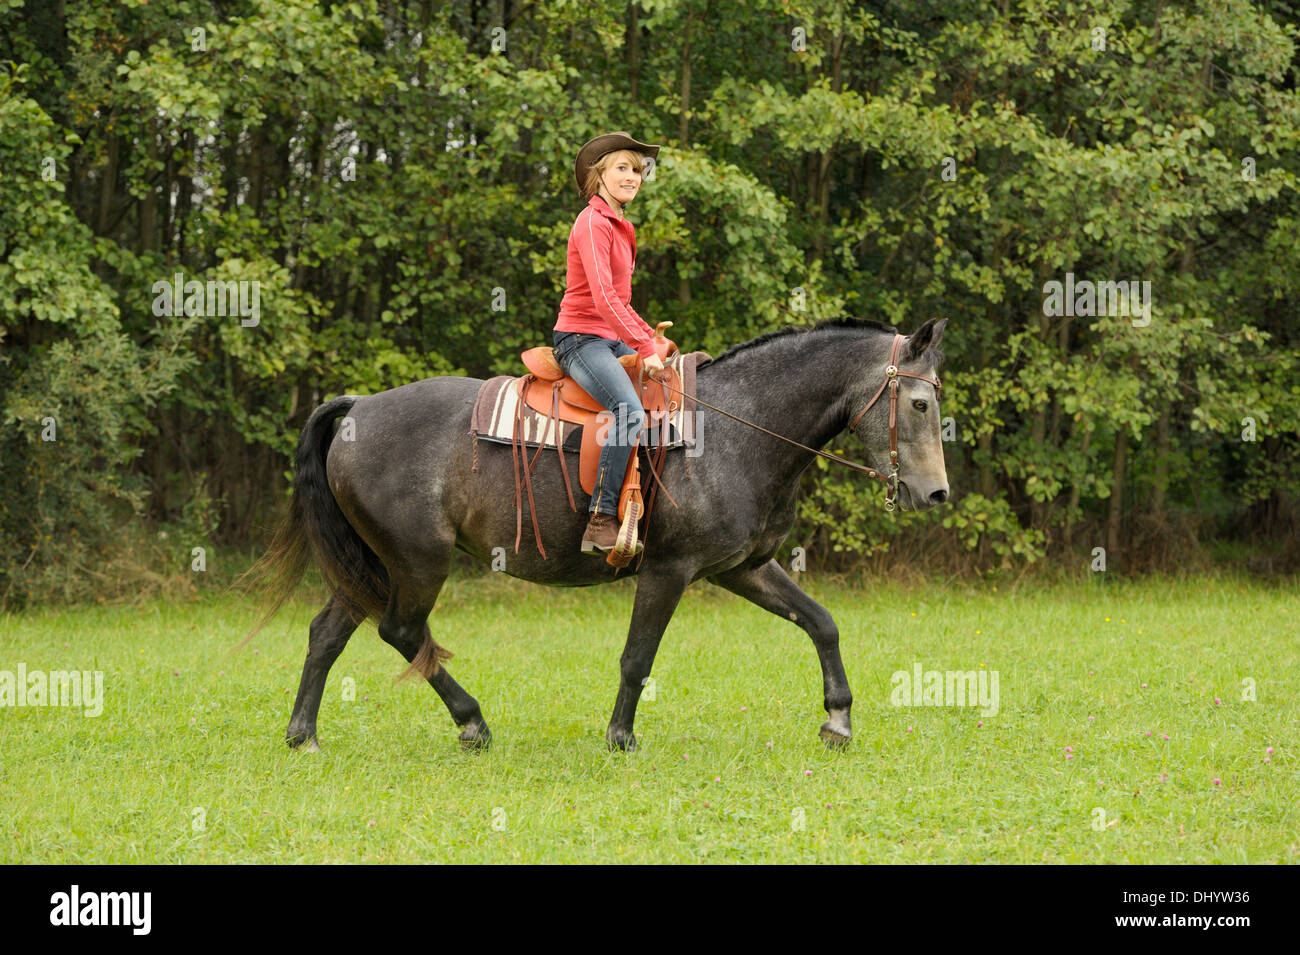 Western-Stil Reiten auf Rückseite ein Connemara-pony Stockfotografie - Alamy